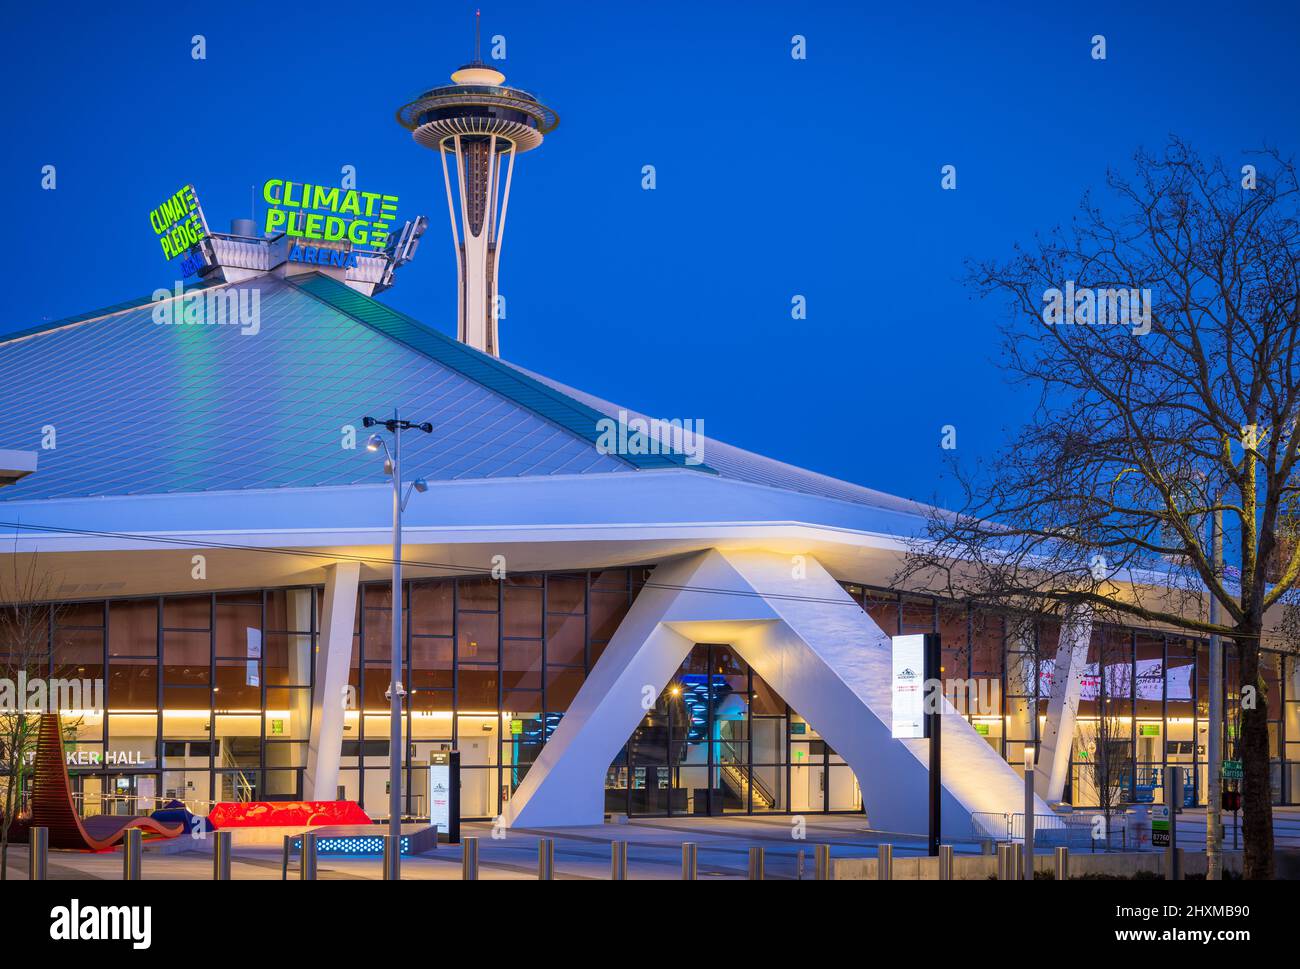 Climate pegno Arena è un'arena polivalente a Seattle, Washington, Stati Uniti. Si trova a nord del centro di Seattle, in un parco divertimenti di 74 acri Foto Stock